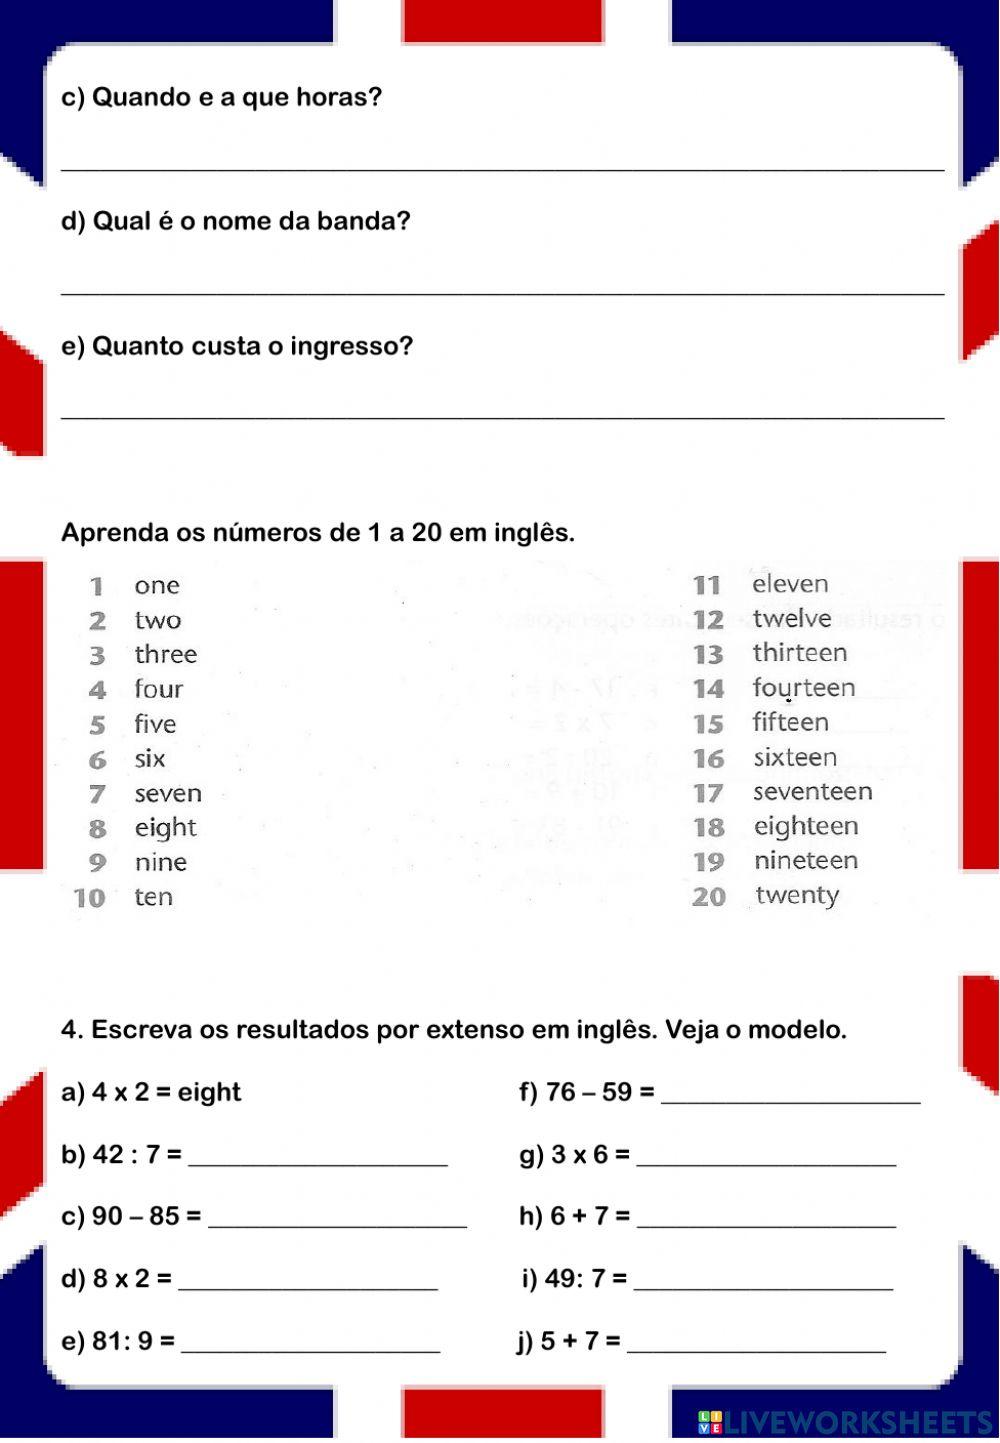 6th grade - Lesson 5 - E.M. Domingos Bebiano